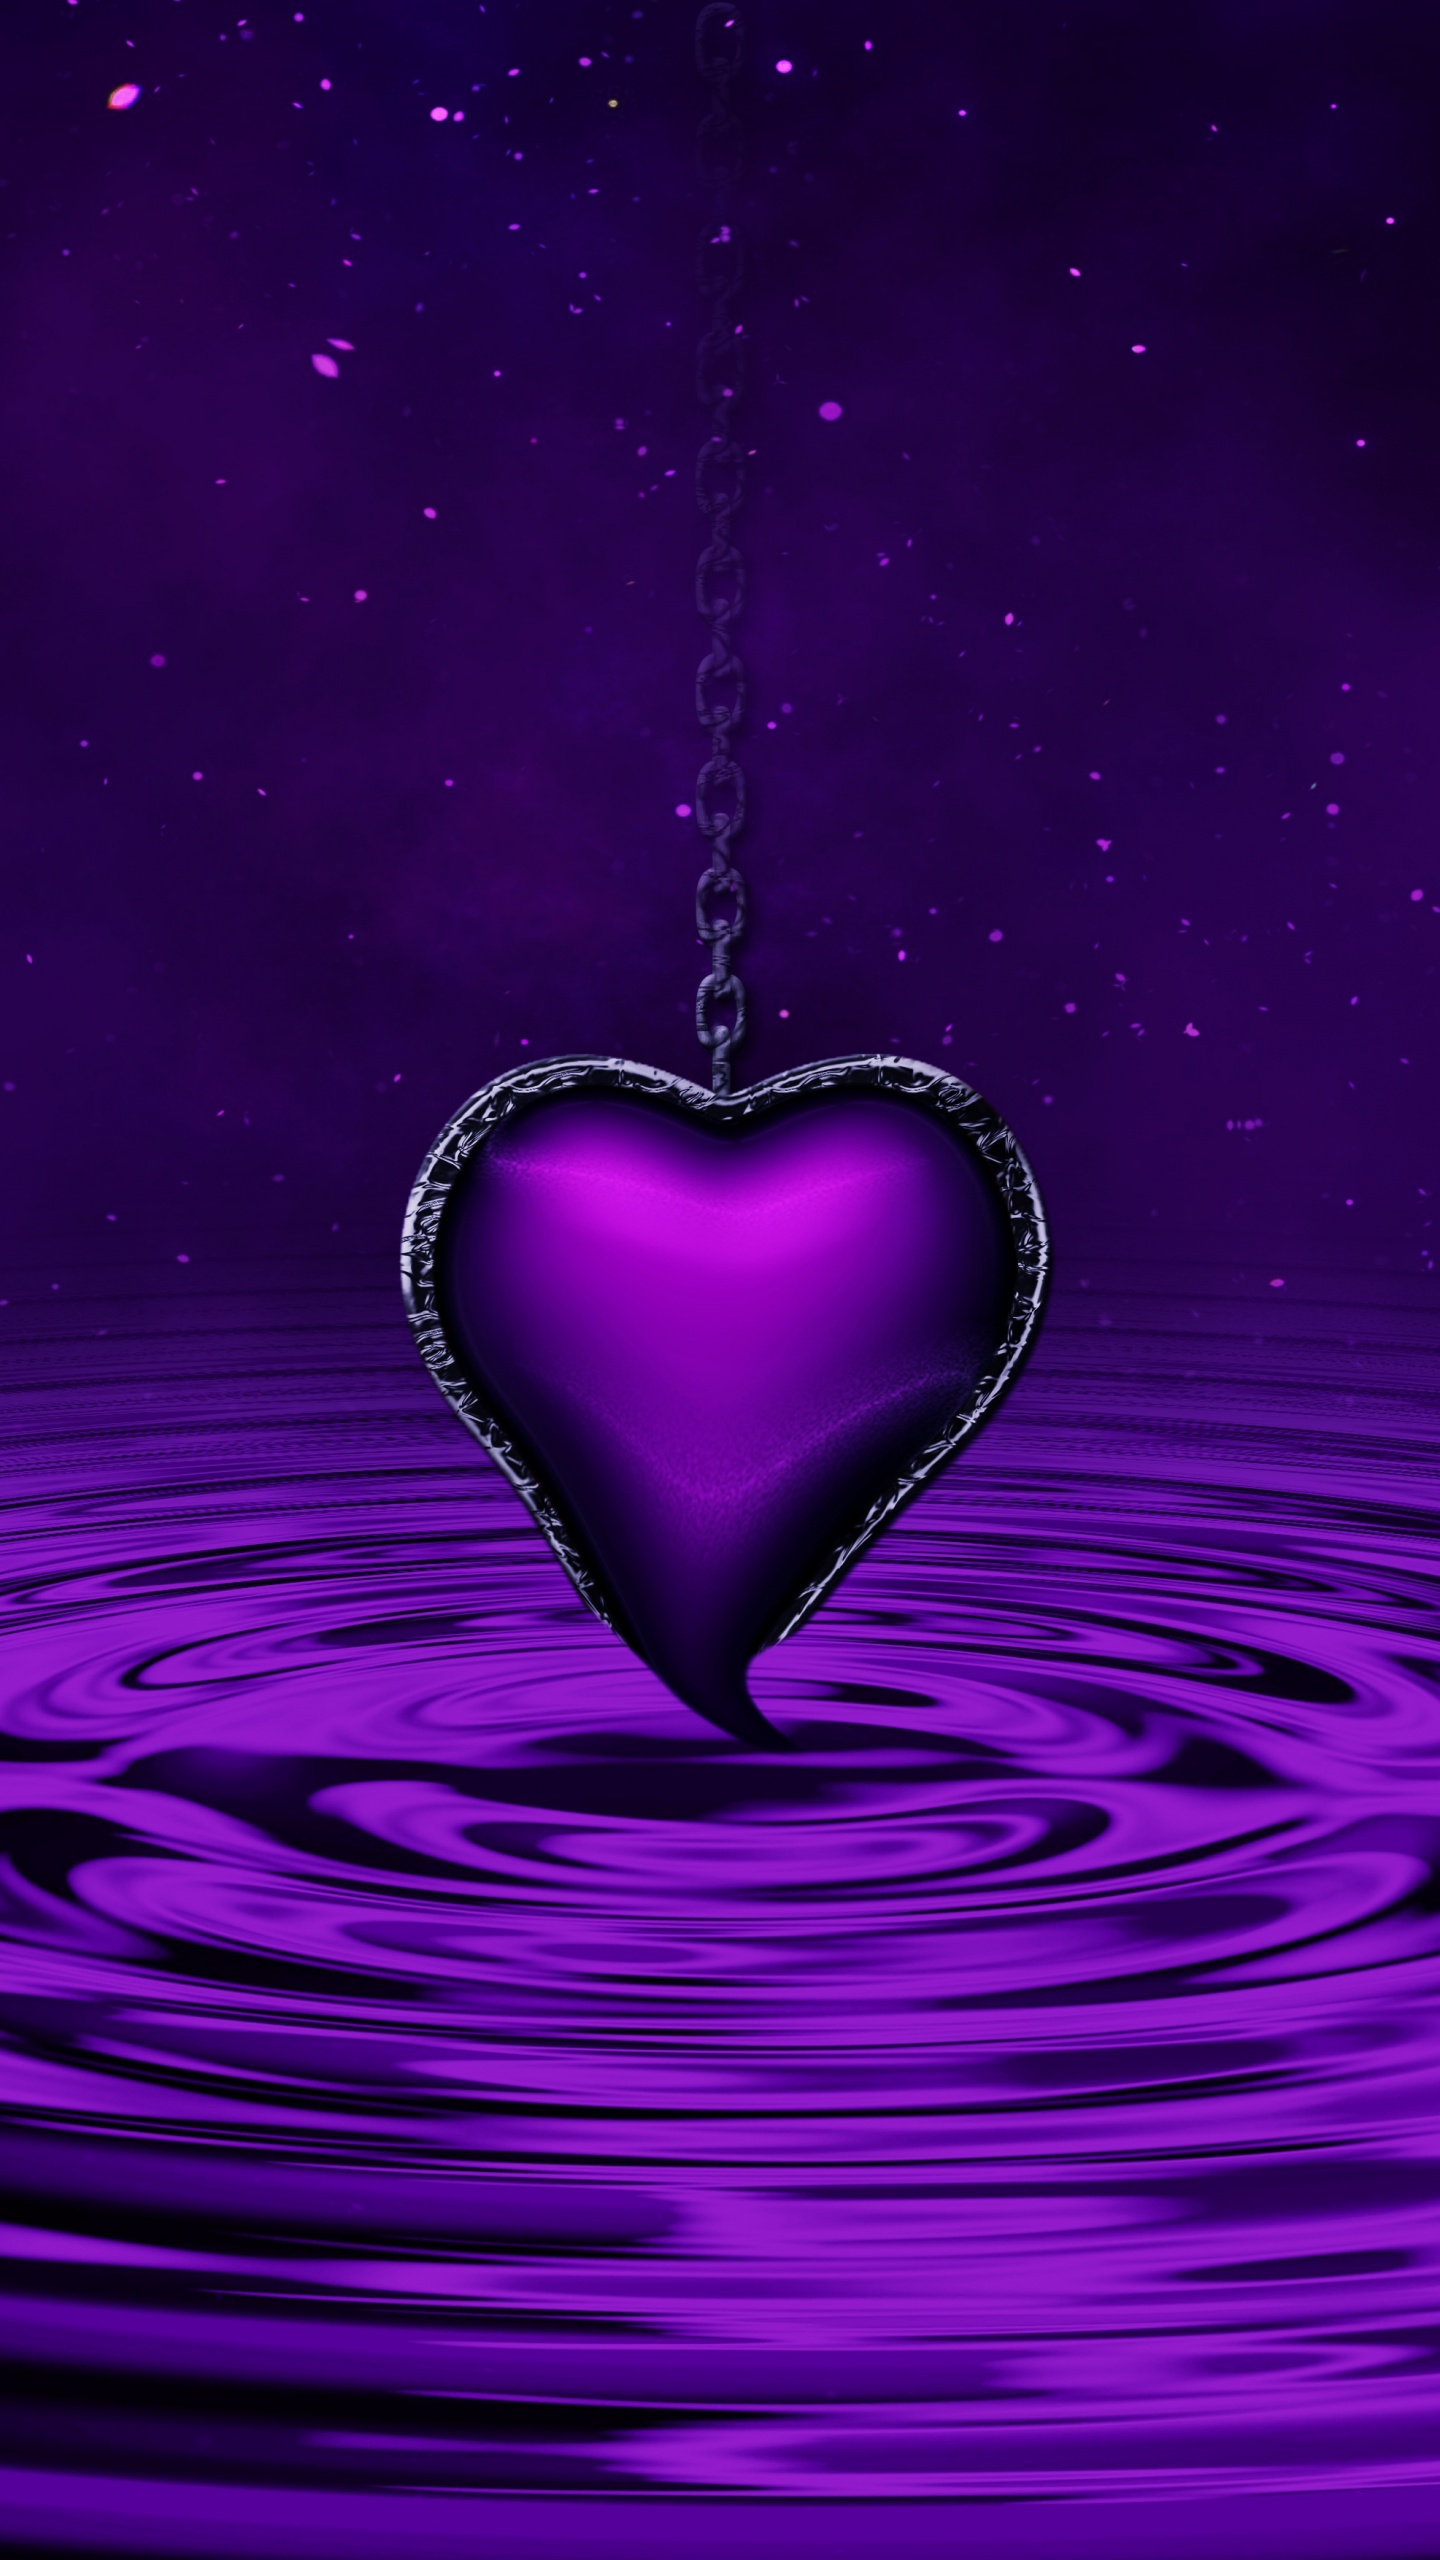 Nếu bạn đang tìm kiếm hình nền đẹp, tinh tế và đầy cảm hứng, hãy không bỏ qua Purple Heart Wallpaper. Với màu tím trầm ấm và hoa văn hình trái tim tinh xảo, hình nền này sẽ là món quà tuyệt vời cho màn hình thiết bị của bạn.